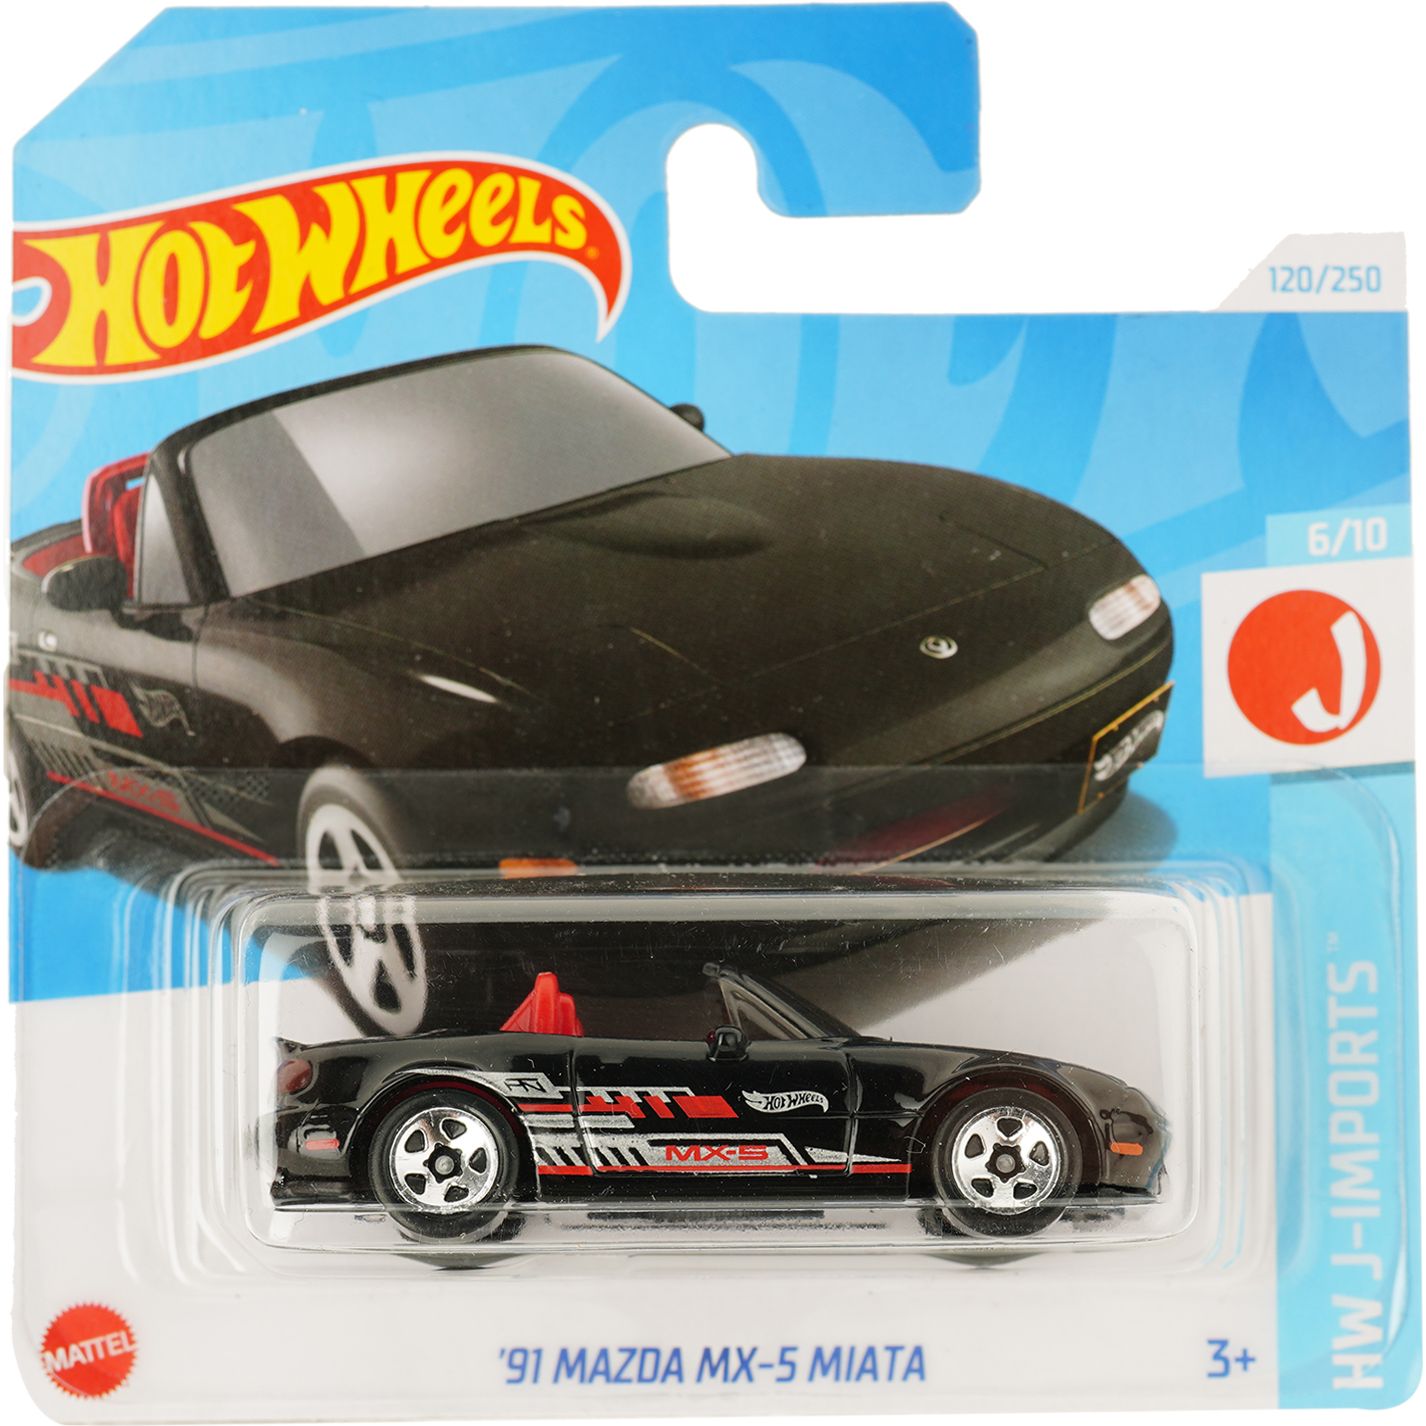 Базова машинка Hot Wheels HW J-Imports '91 Mazda MX-5 Miata чорна (5785) - фото 1